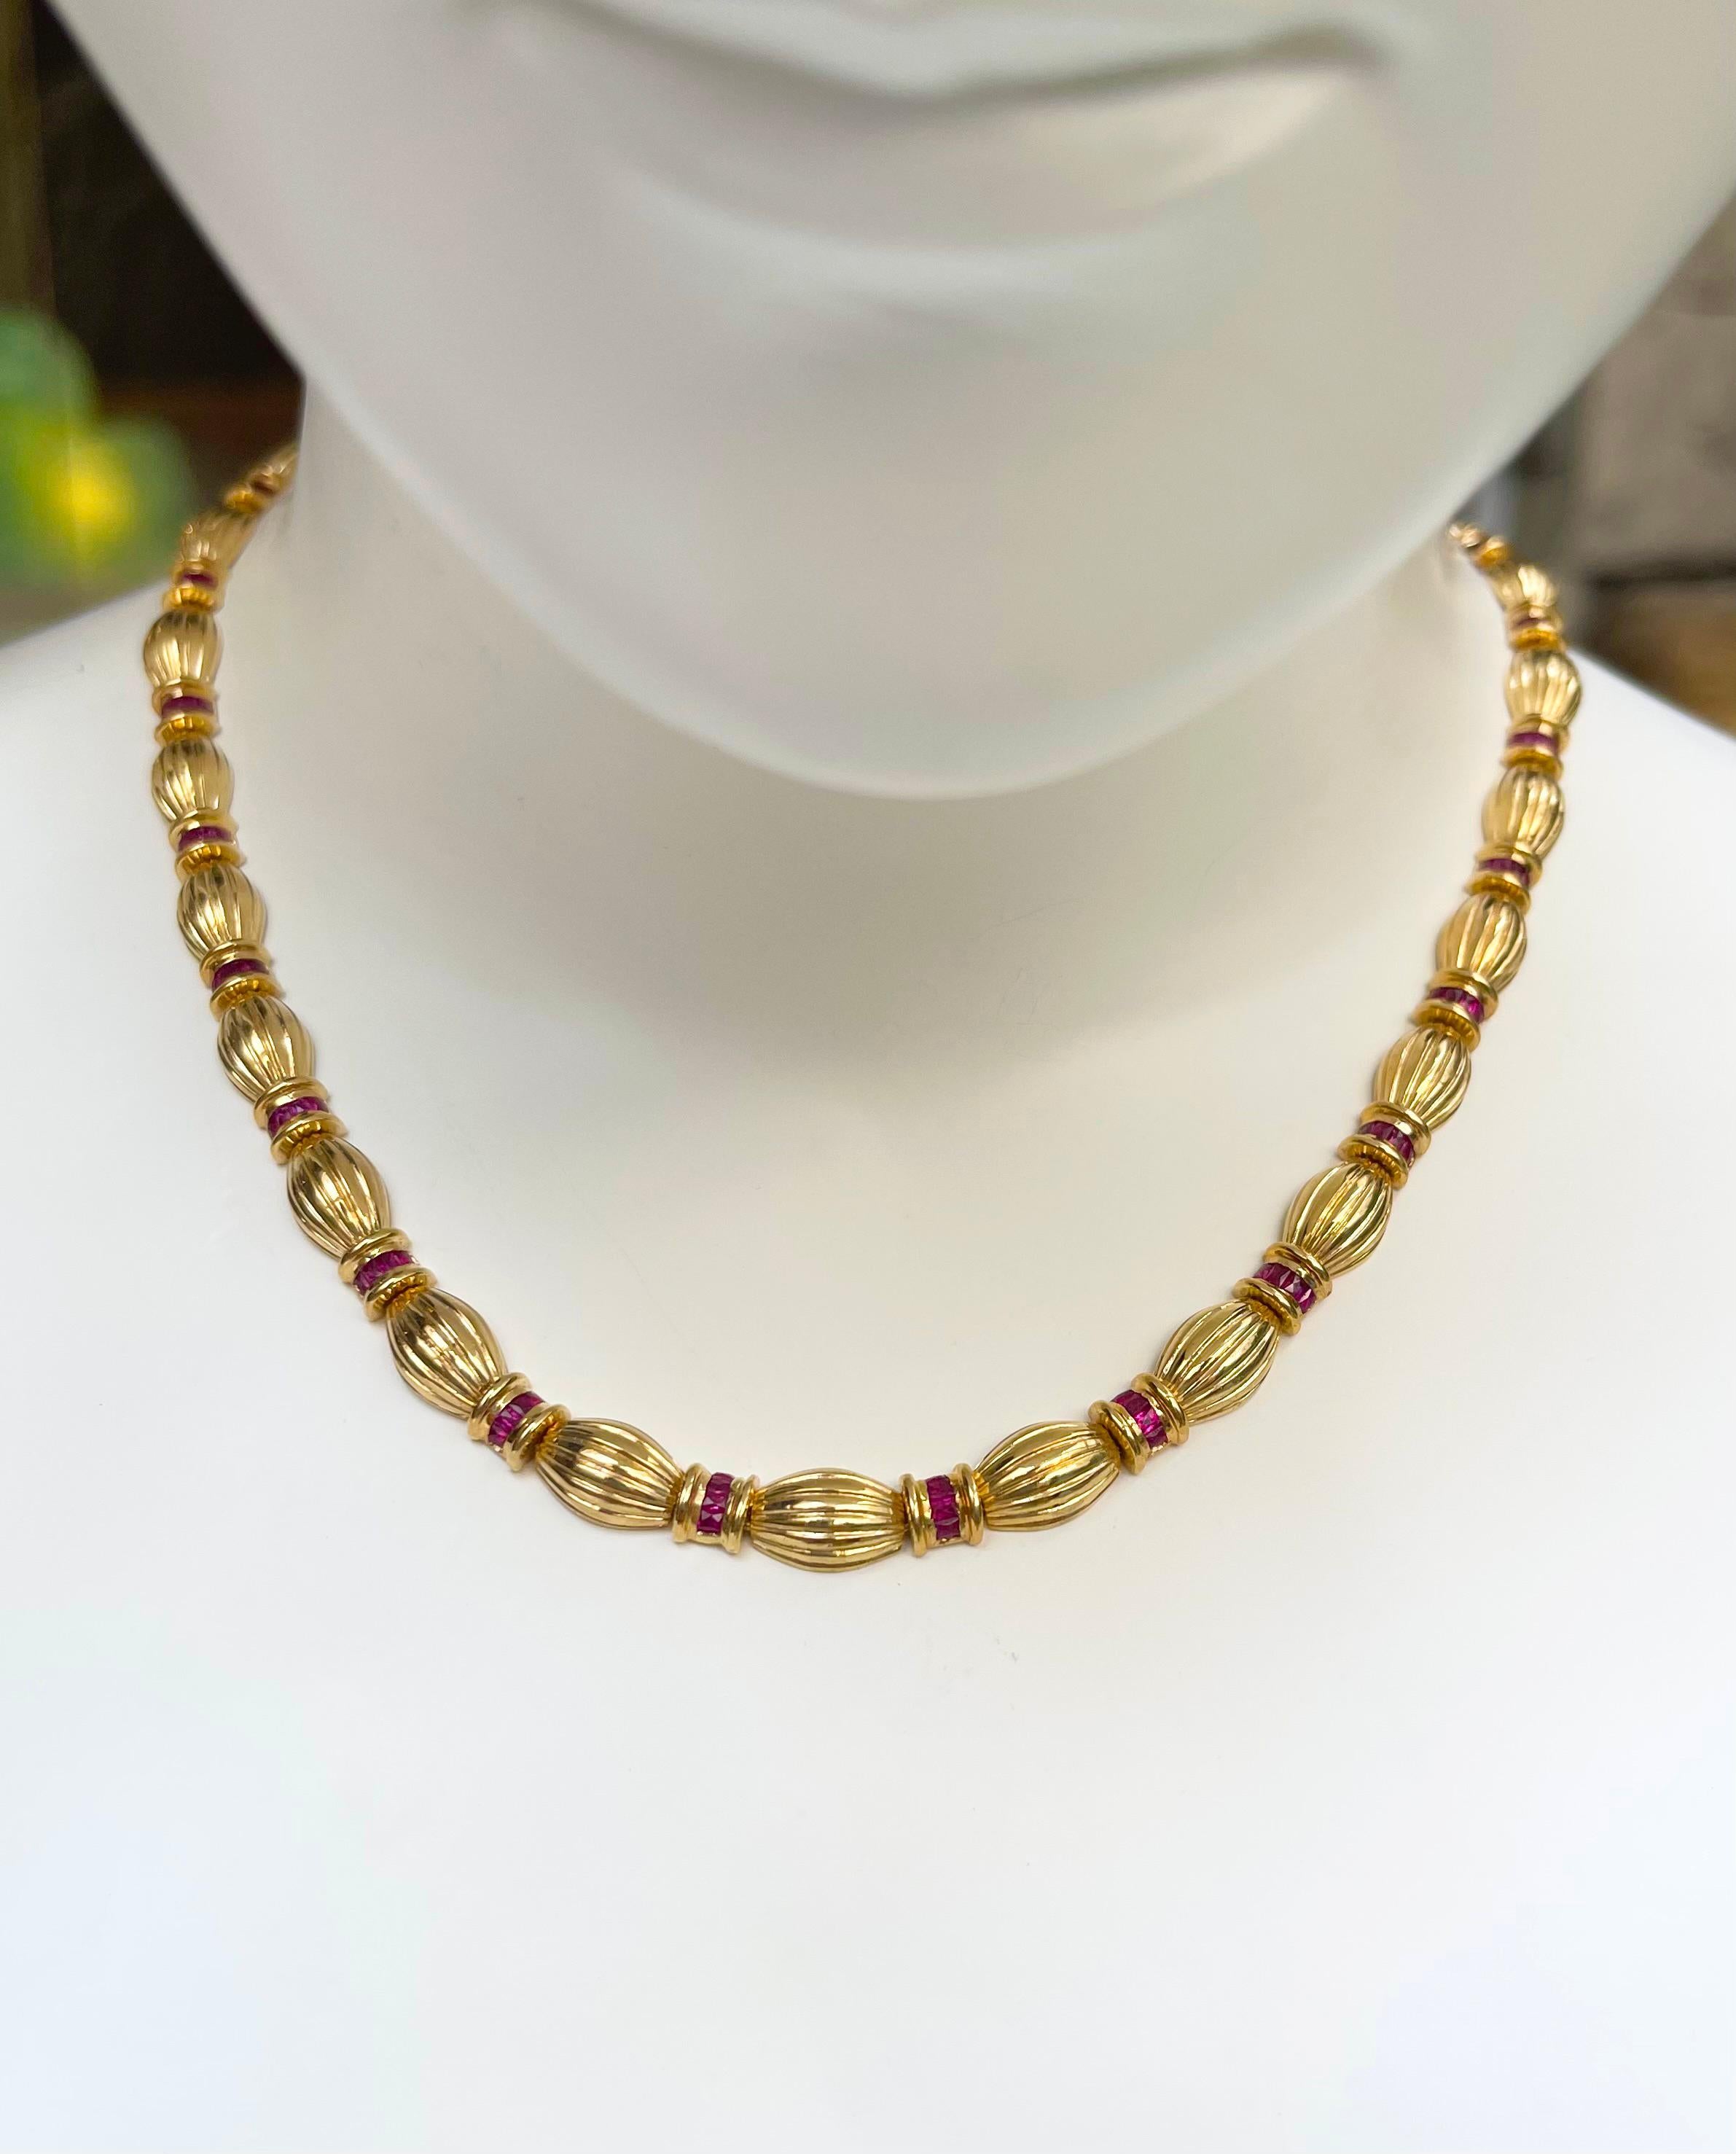 Rubin 6,36 Karat Halskette in 18K Goldfassung

Breite: 0,7 cm 
Länge: 42,0 cm
Gesamtgewicht: 53,04 Gramm

